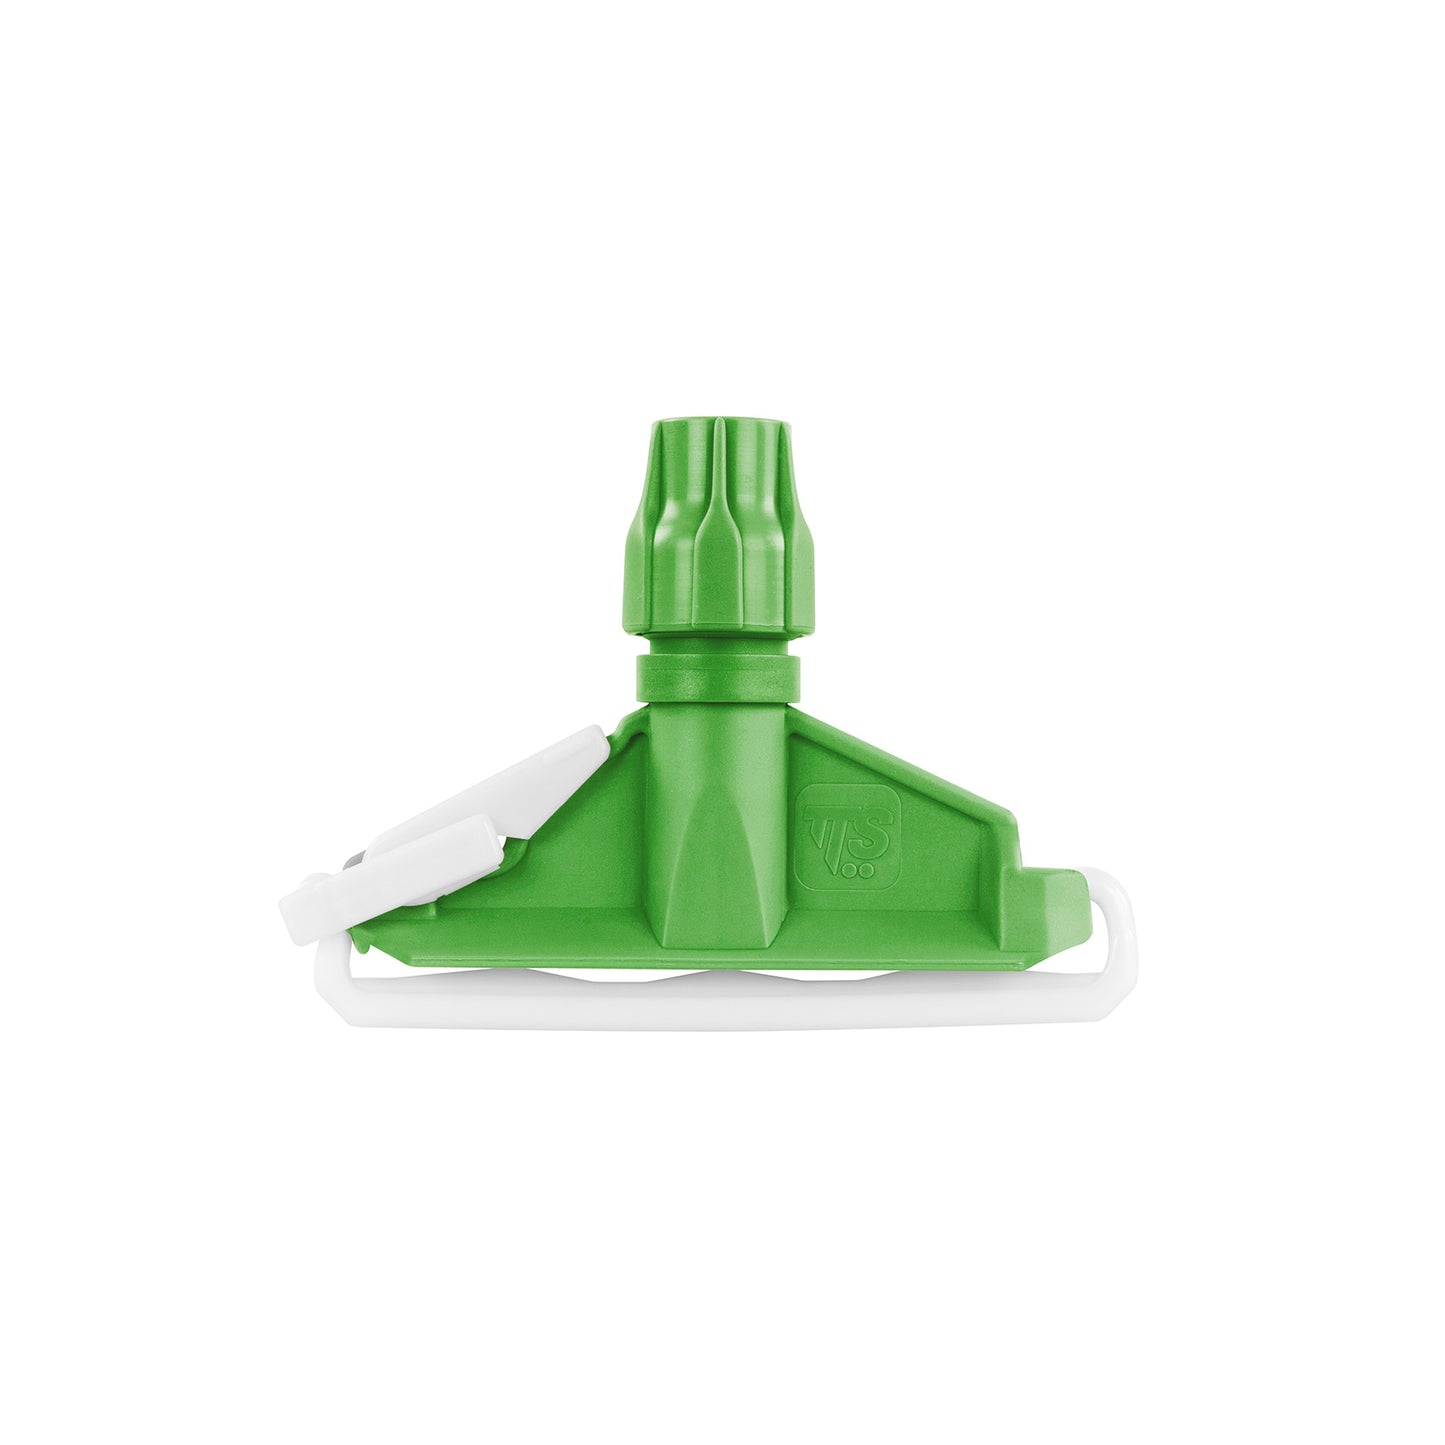 A pinça verde para mopa é um sistema que pode ser usado como espremedor de mandíbula ou plano. Ideal para limpar sujeiras residuais que necessitem de enxaguamento recorrente das fibras. Compatível com qualquer cabo com furo com diâmetro de 18 a 23 mm.